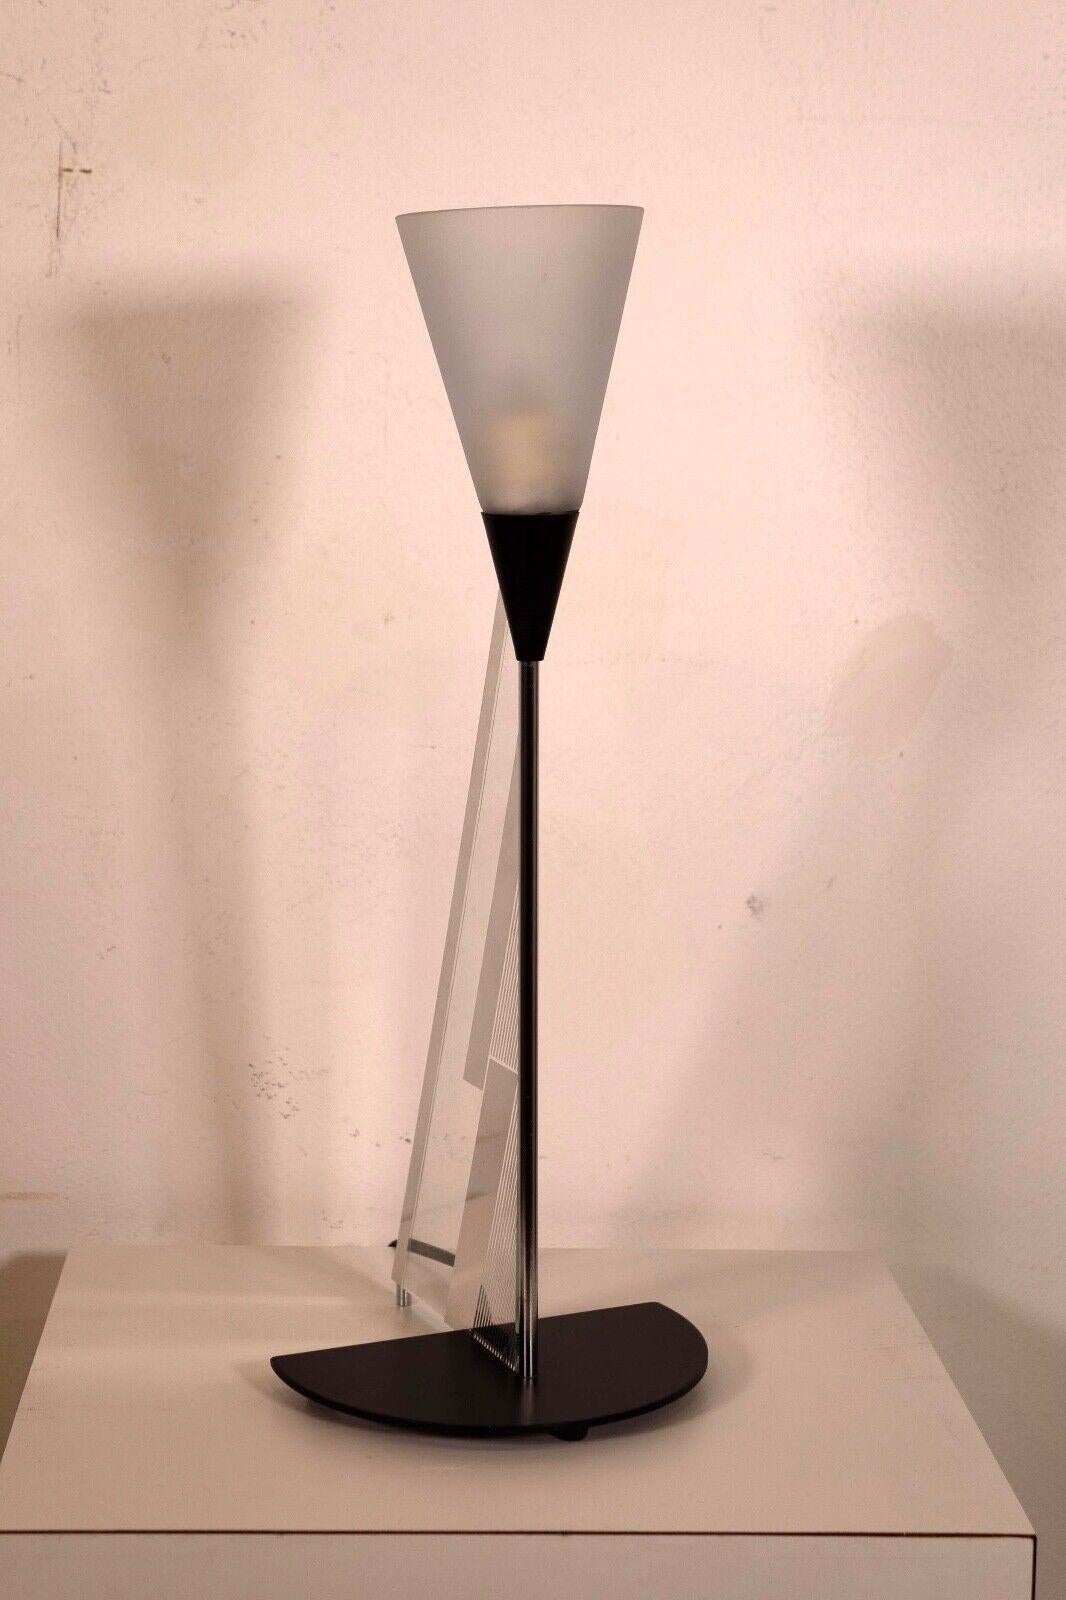 La lampe de forme triangulaire Canetti Mid Century Modern présente un design épuré et géométrique avec une forme triangulaire pointue qui se rétrécit vers le haut. Sa base est un demi-cercle noir qui complète l'esthétique moderne de la lampe,